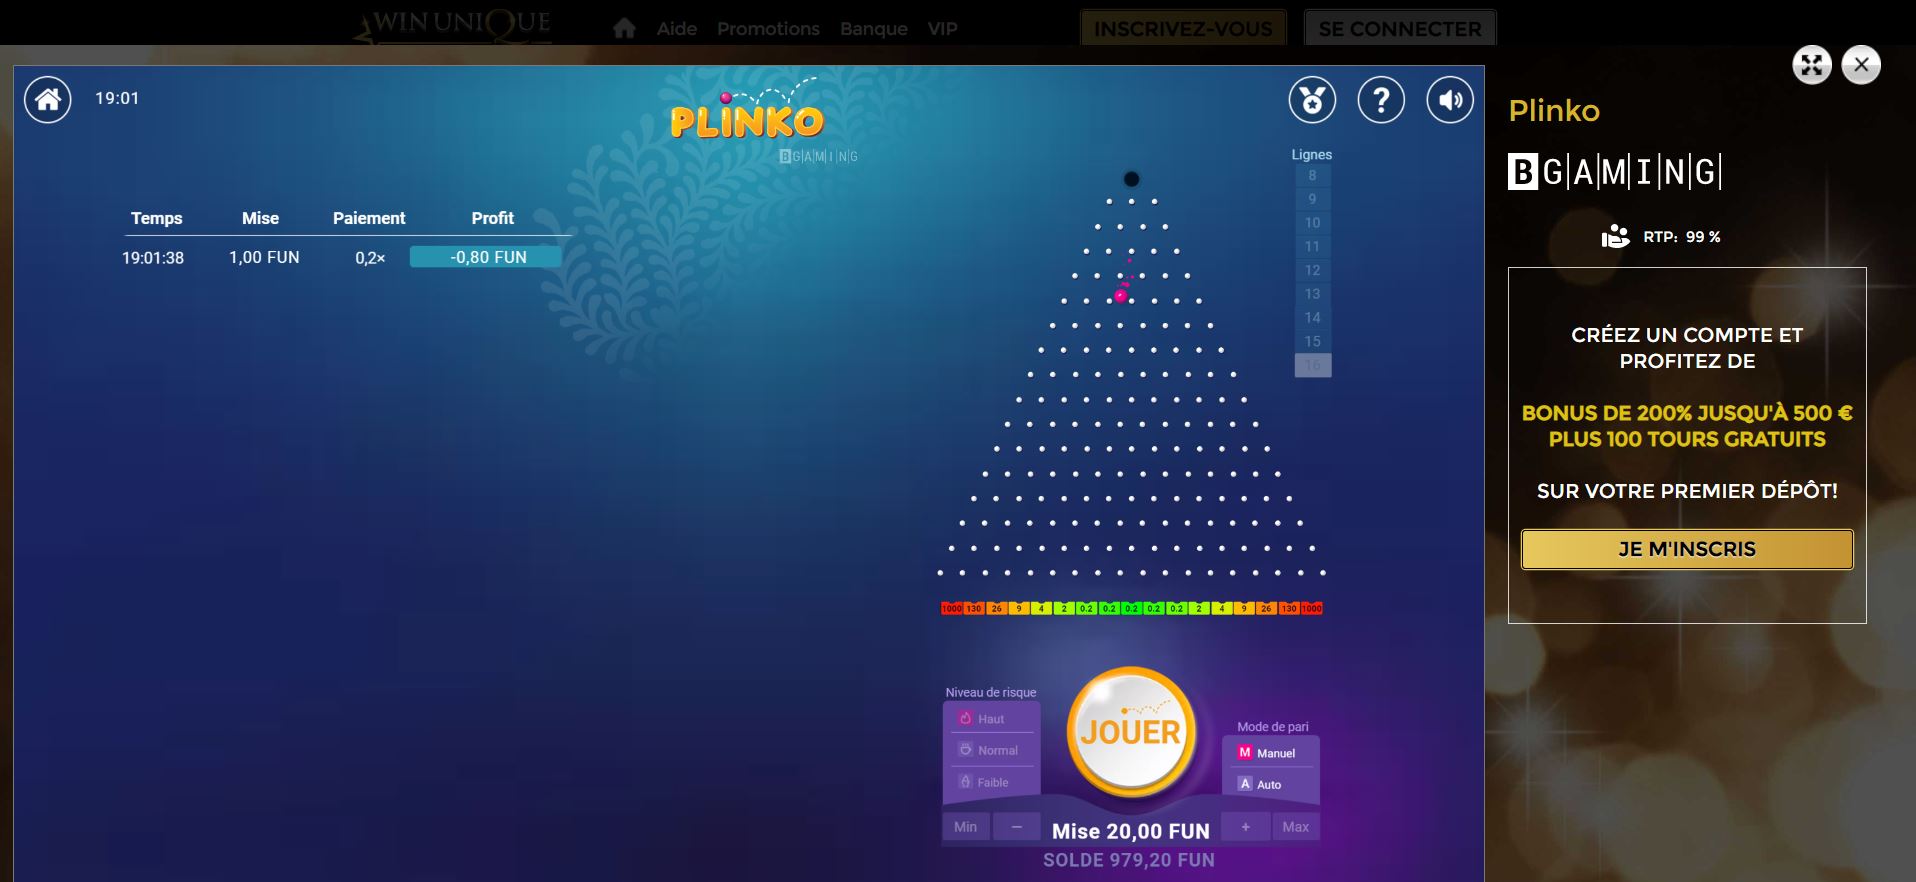 Plinko sur Unique Casino - Meilleurs plinko casinos